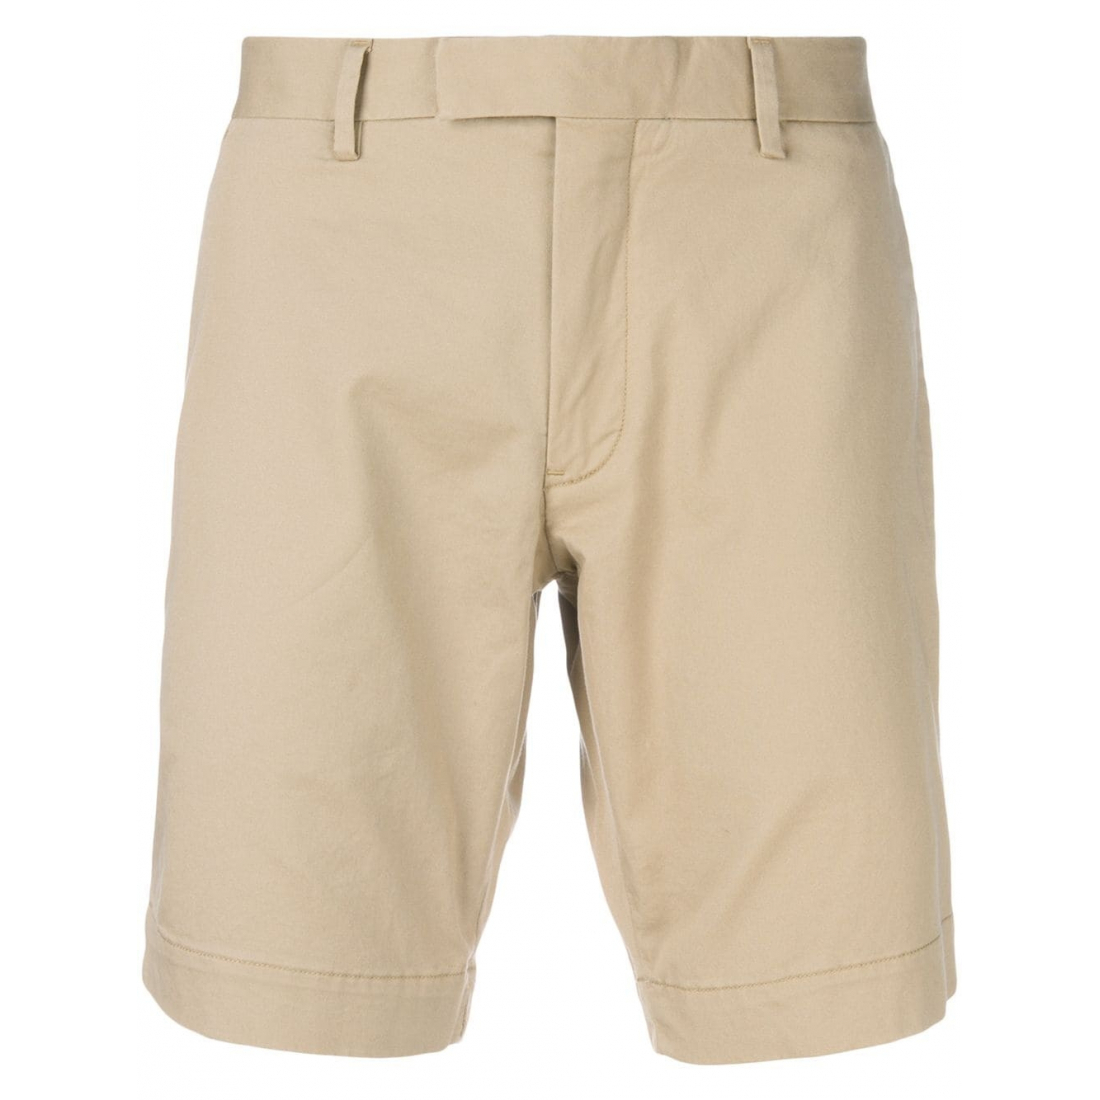 Bermuda Shorts für Herren